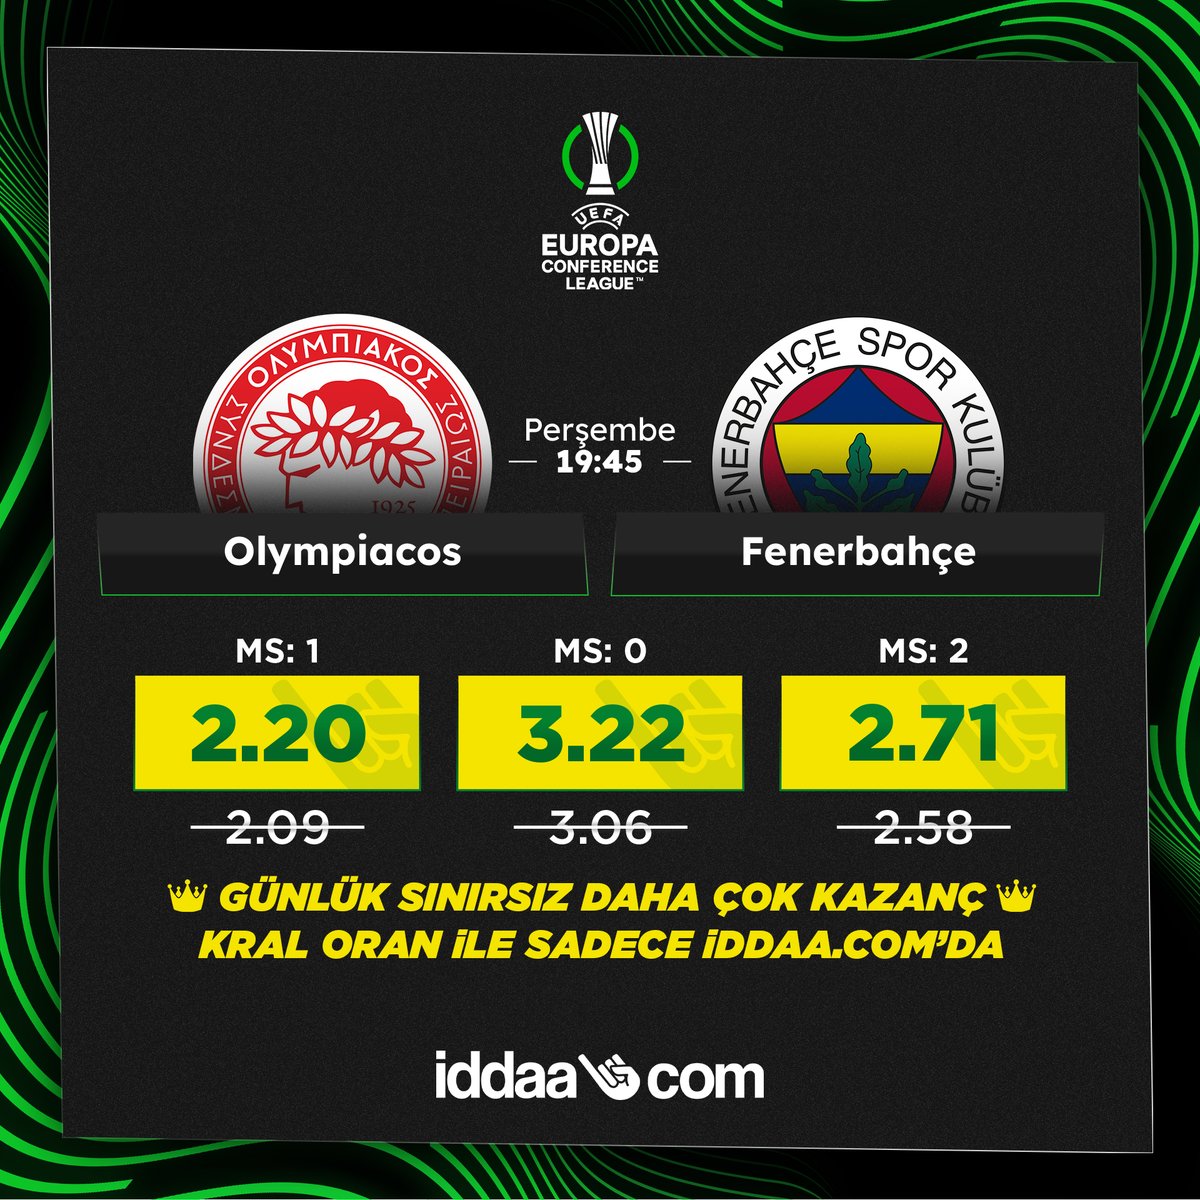 👑 Fenerbahçe'nin Avrupa Konferans Ligi çeyrek final mücadelesi, Kral Oran ile sadece iddaa.com'da!